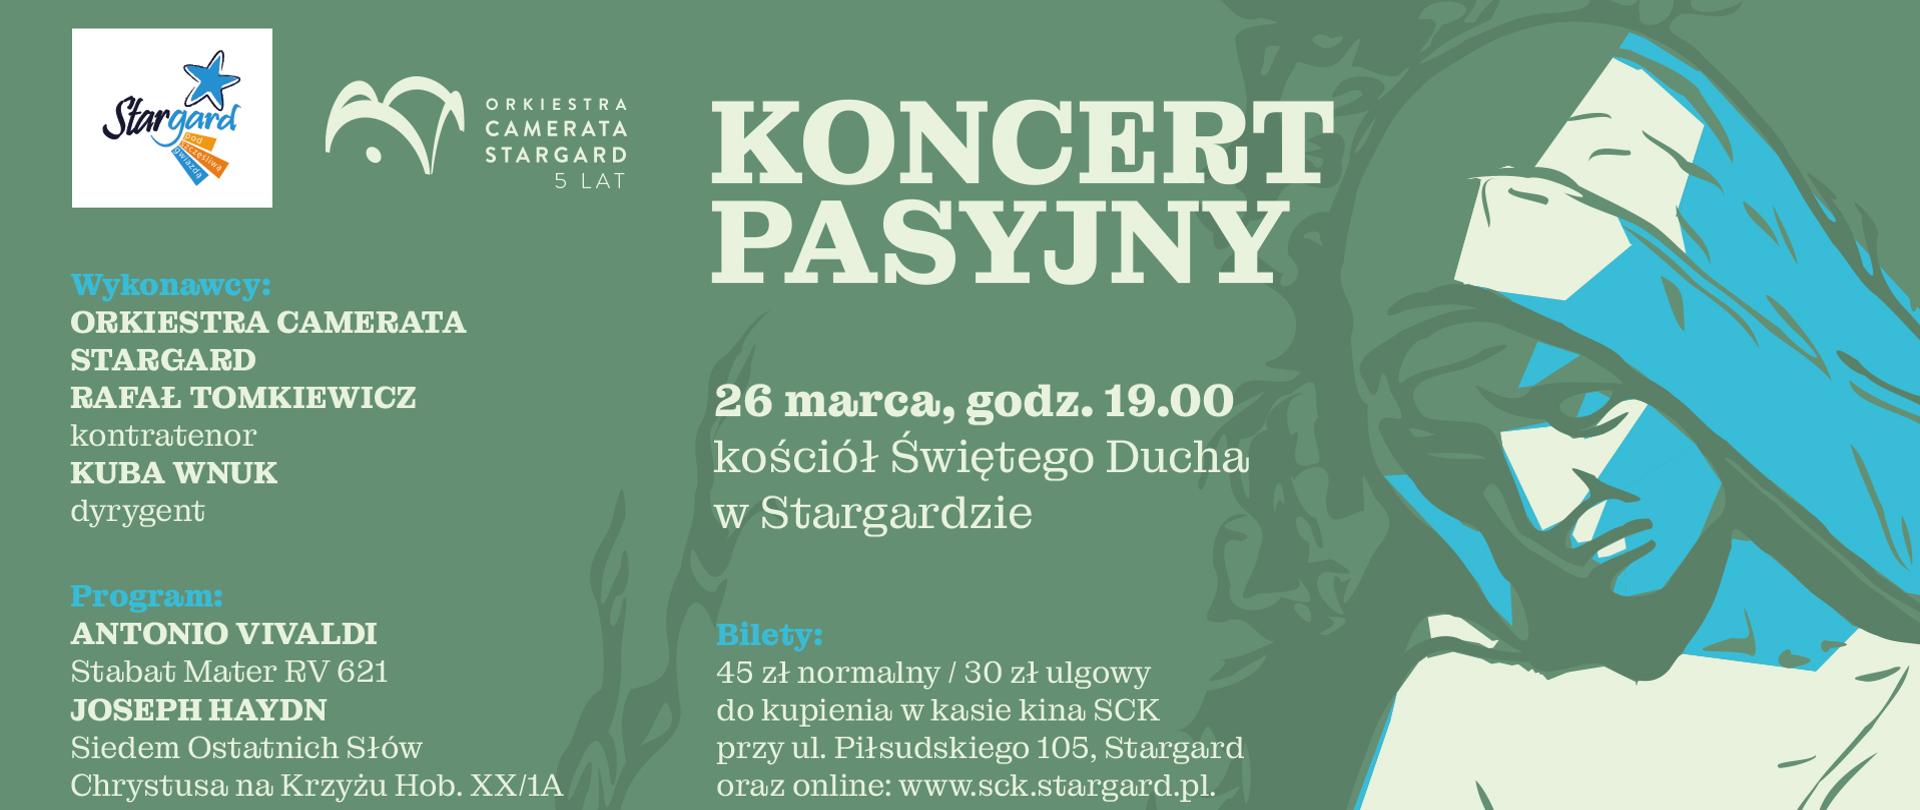 Informacja o koncercie Orkiestry Camerata Stargard w dniu 26 marca 2023. 